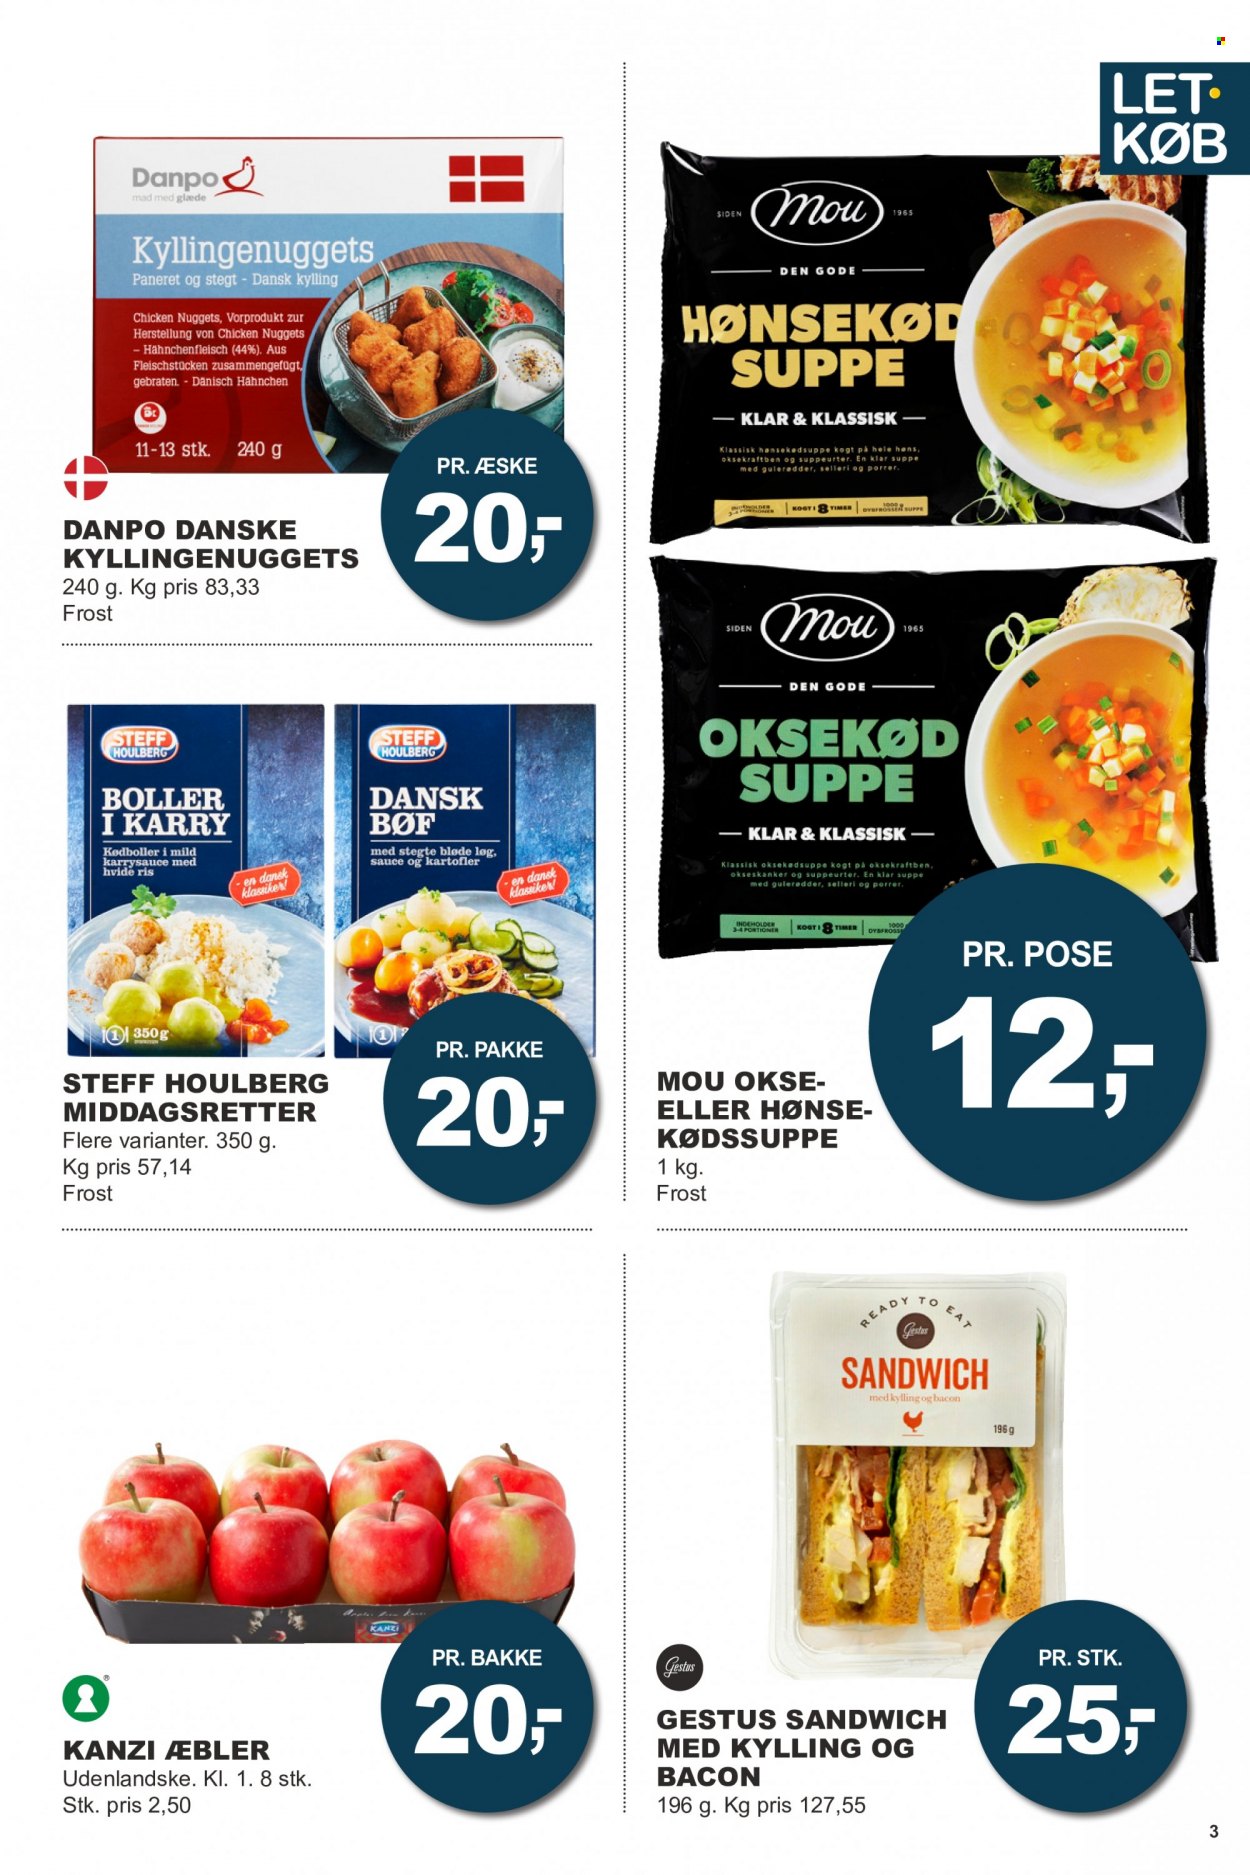 thumbnail - Let-Køb tilbud  - 3.1.2022 - 16.1.2022 - tilbudsprodukter - æbler, oksekød, sandwich, boller, kyllinge nuggets, Steff Houlberg, suppe, færdigretter, frikadeller, bacon, ris, sauce. Side 3.